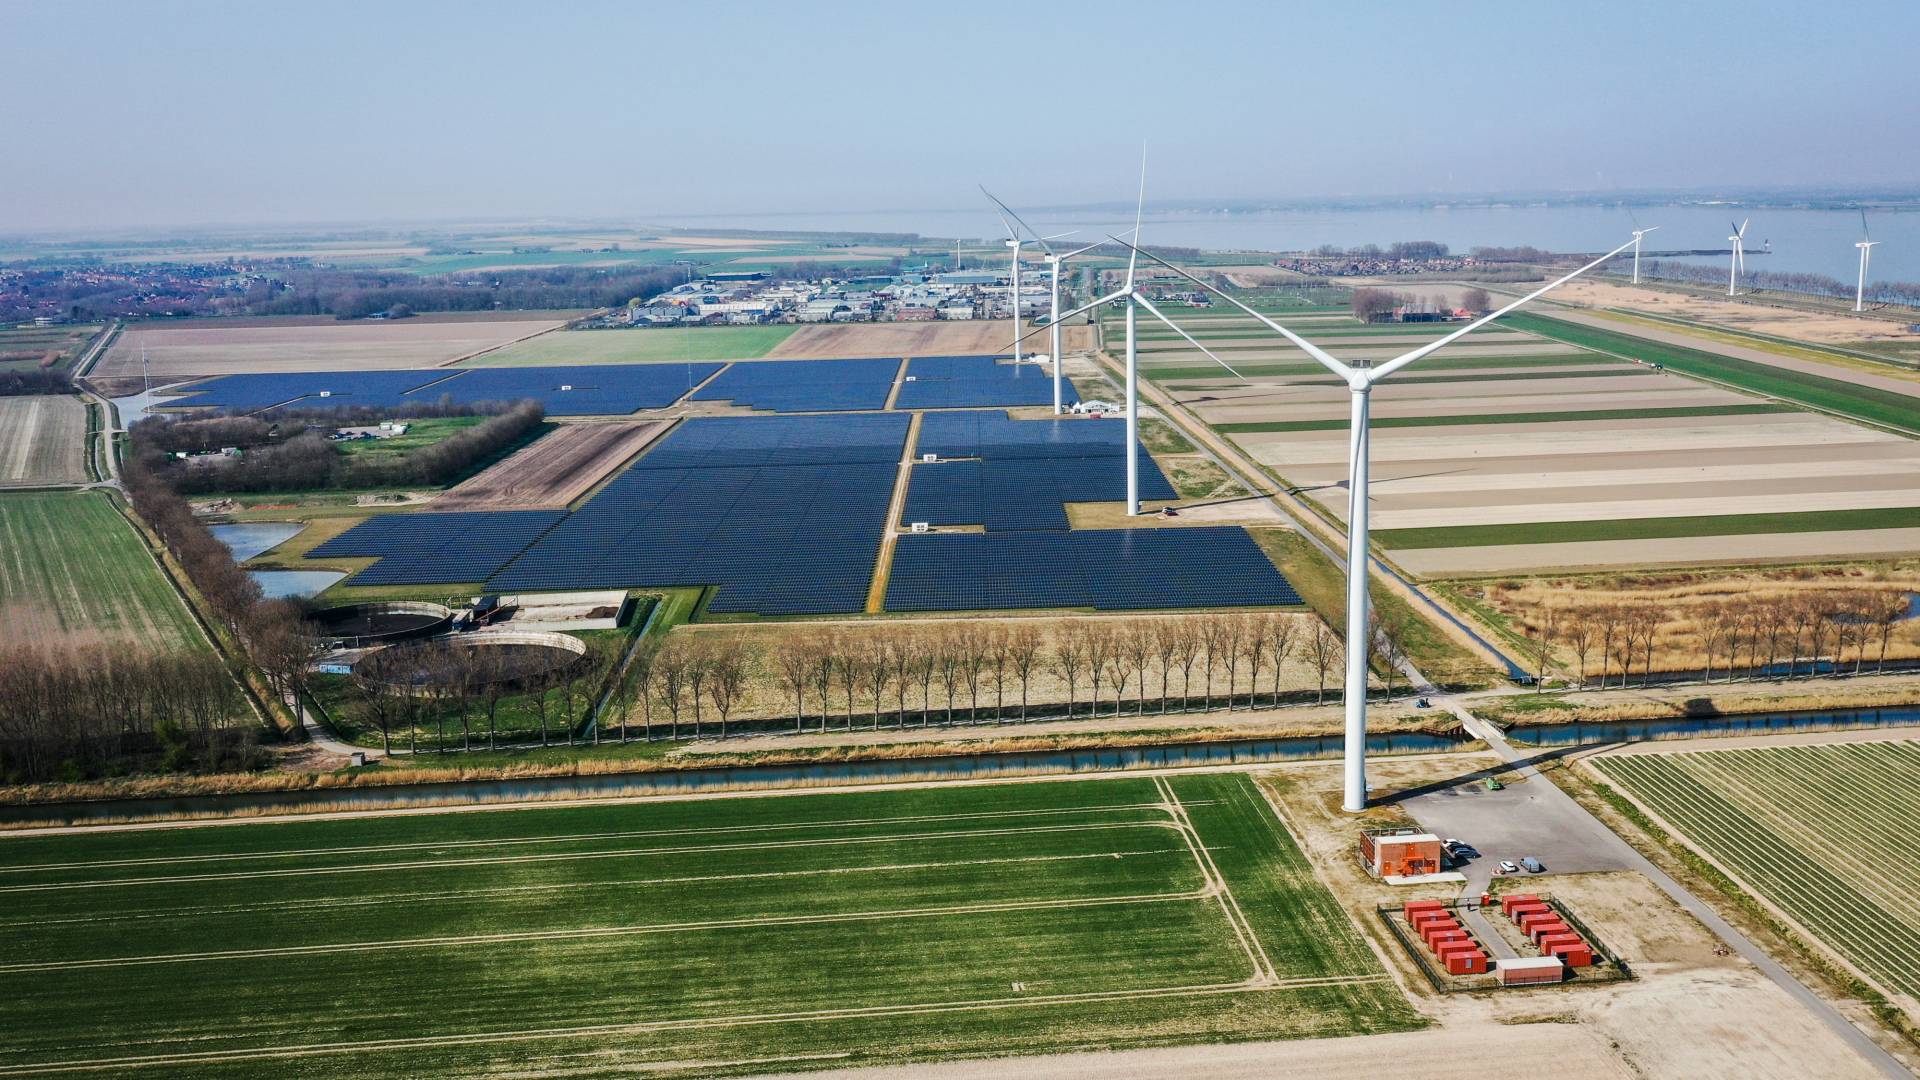 لاول مرة في هولندا تكون كمية توليد الطاقة الكهربائية أكبر من كميات الاستهلاك..فمال الفائدة من هذا؟